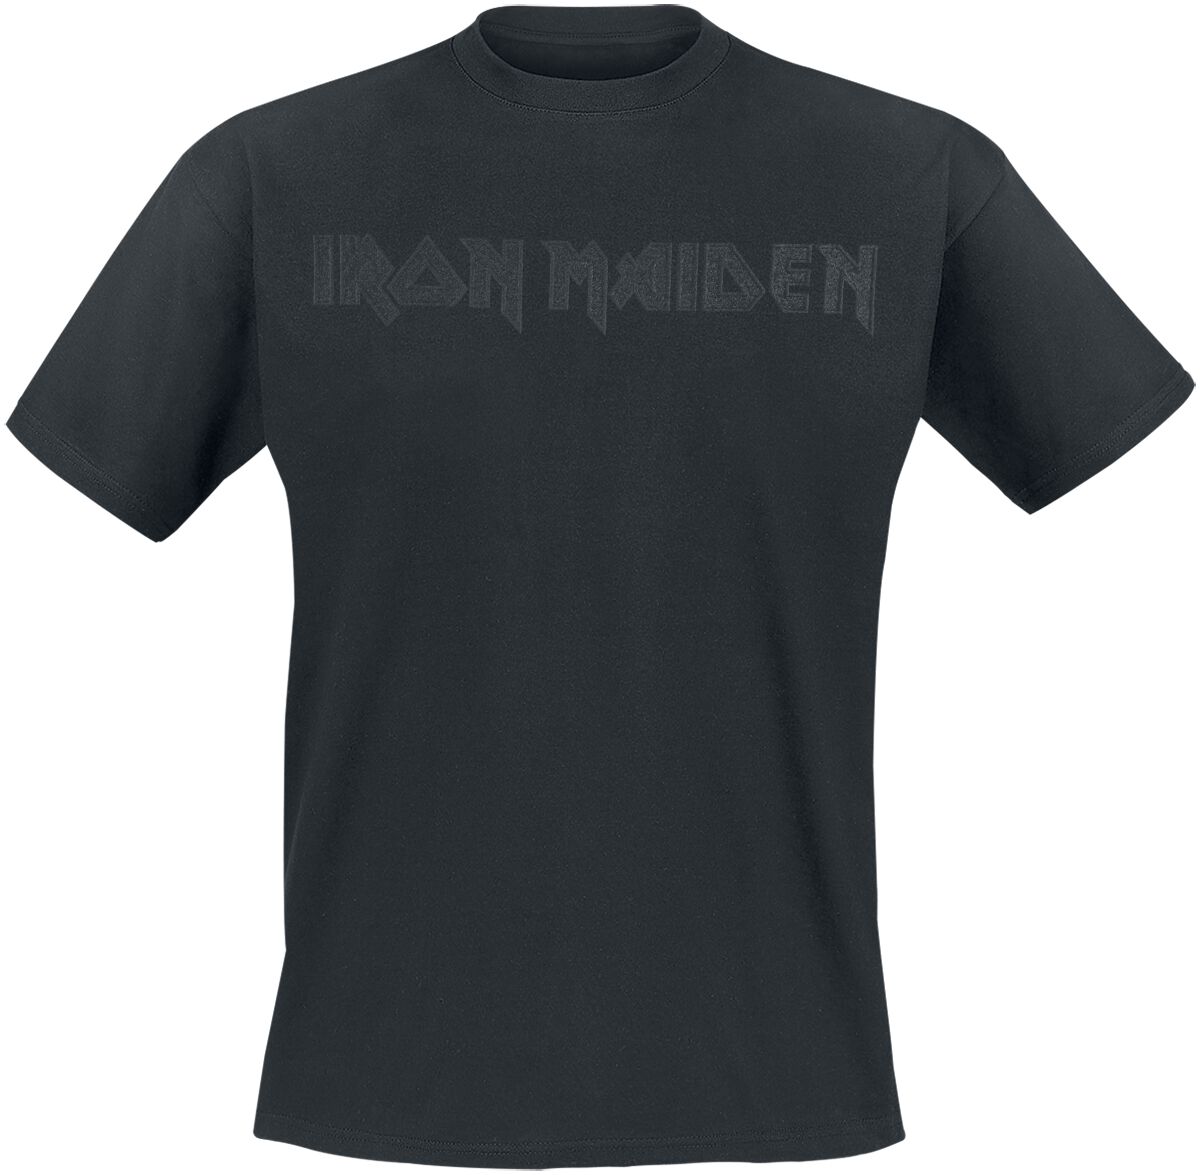 Iron Maiden T-Shirt - Black On Black Logo - S bis 4XL - für Männer - Größe 3XL - schwarz  - Lizenziertes Merchandise!